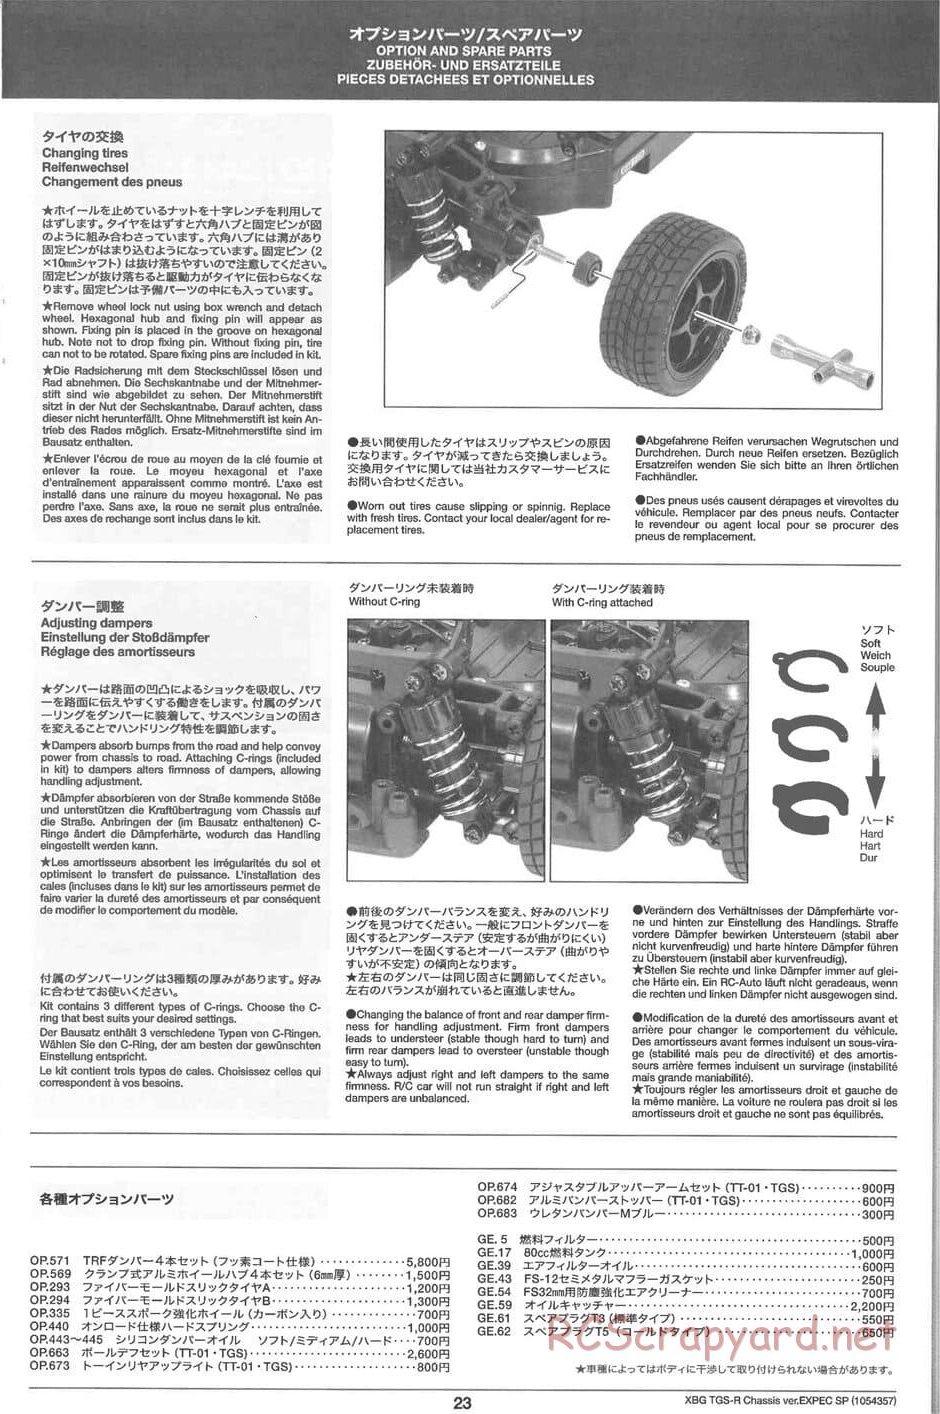 Tamiya - TGS-R Chassis - Manual - Page 23